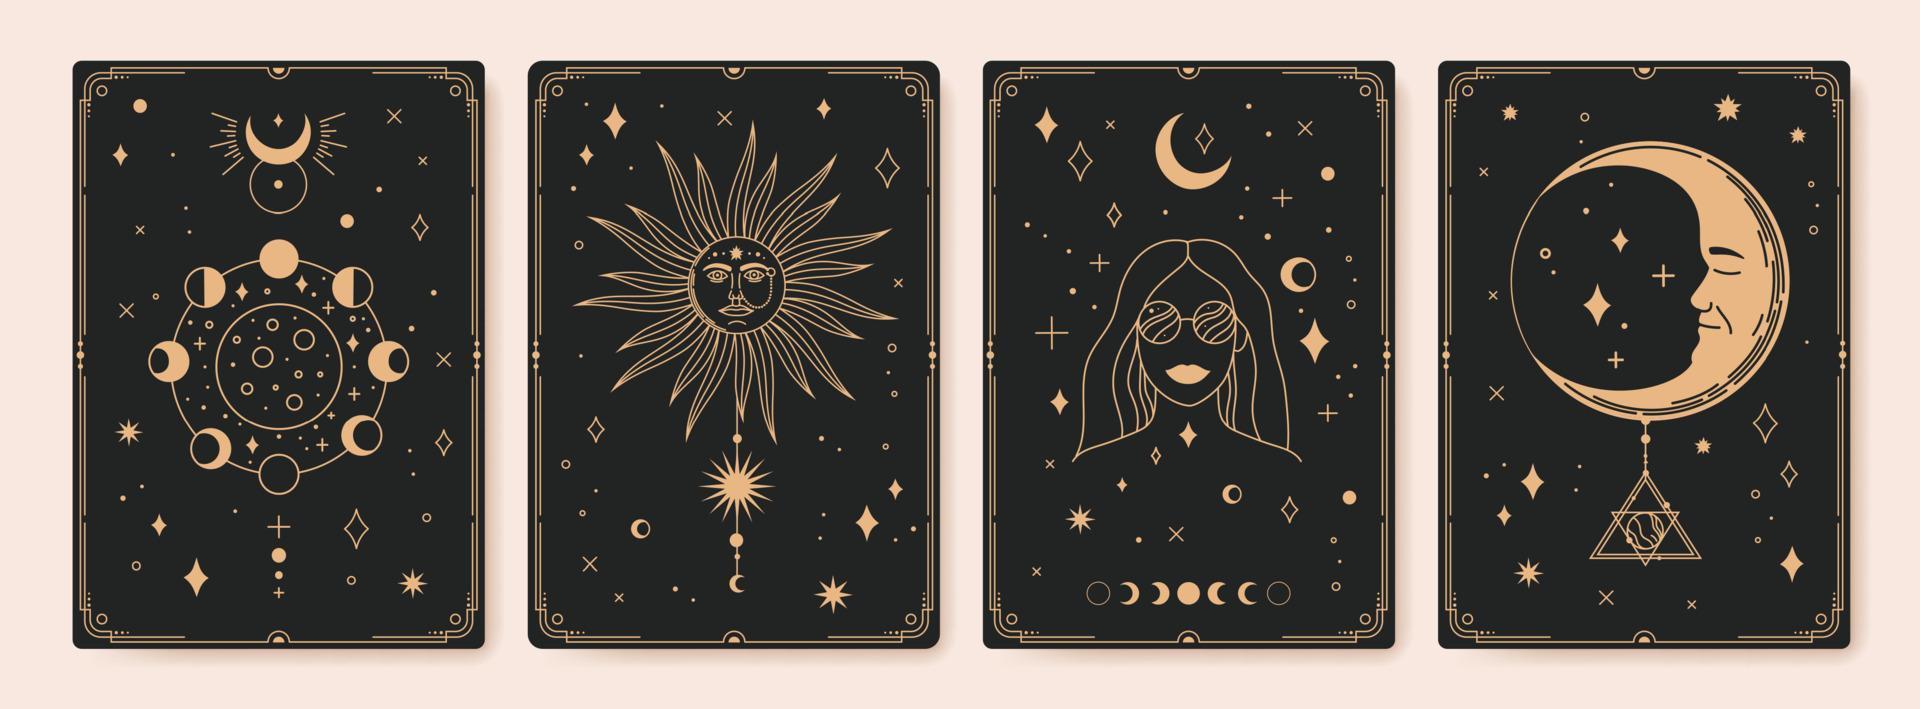 mistico astrologia tarocco carte, boemo occulto carta. Vintage ▾ inciso esoterico carte con Luna fasi, sacro sole e stelle vettore impostato